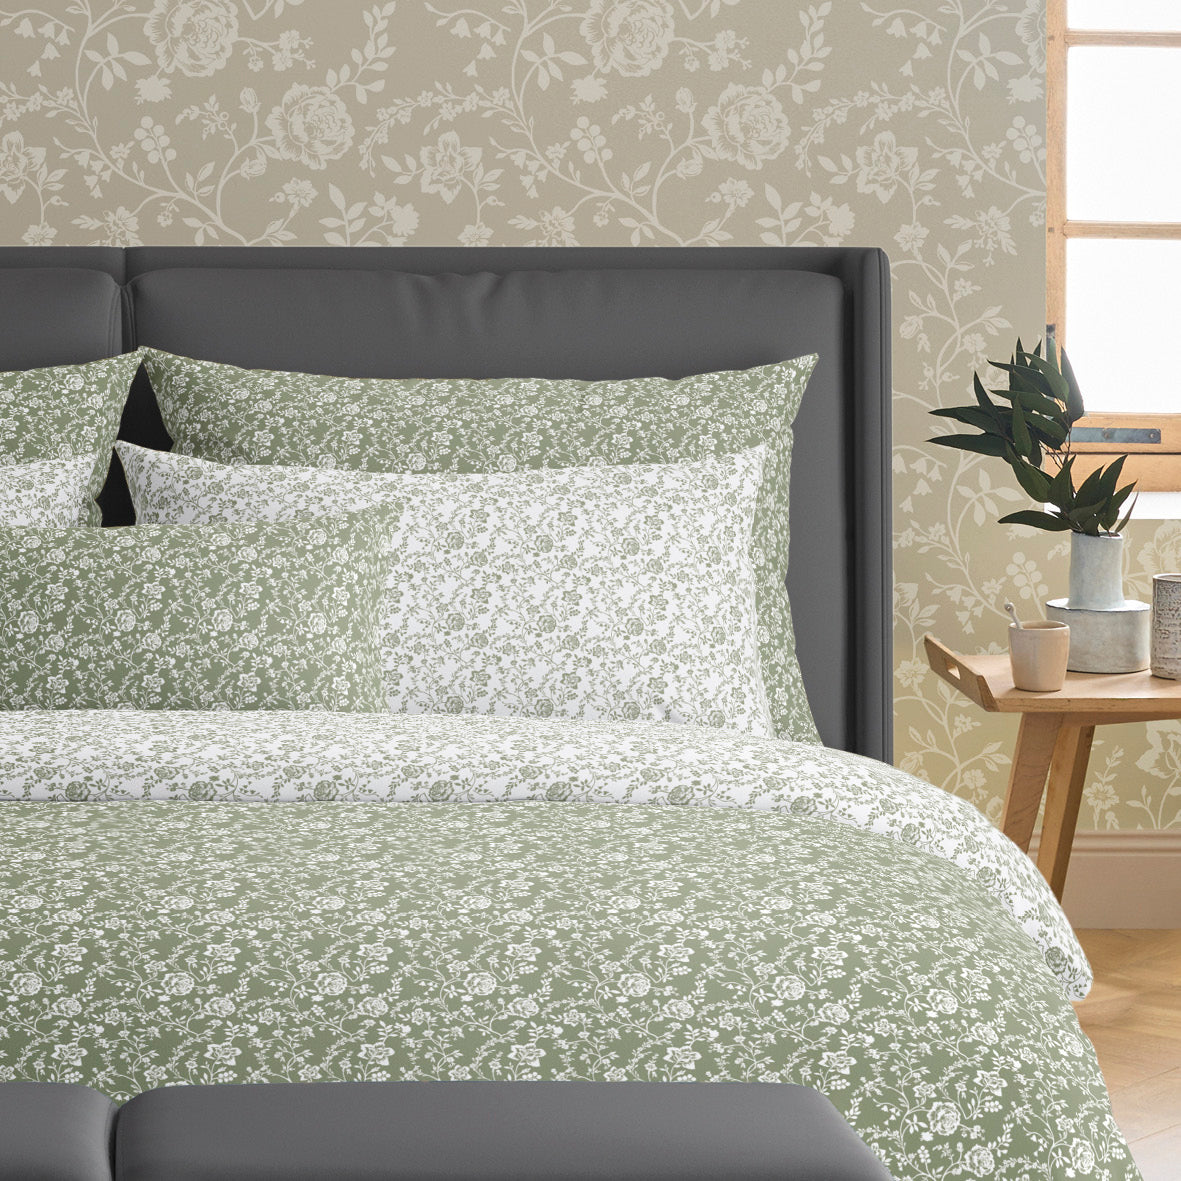 Set of 2 pillowcases cotton satin - Parterre de Roses green